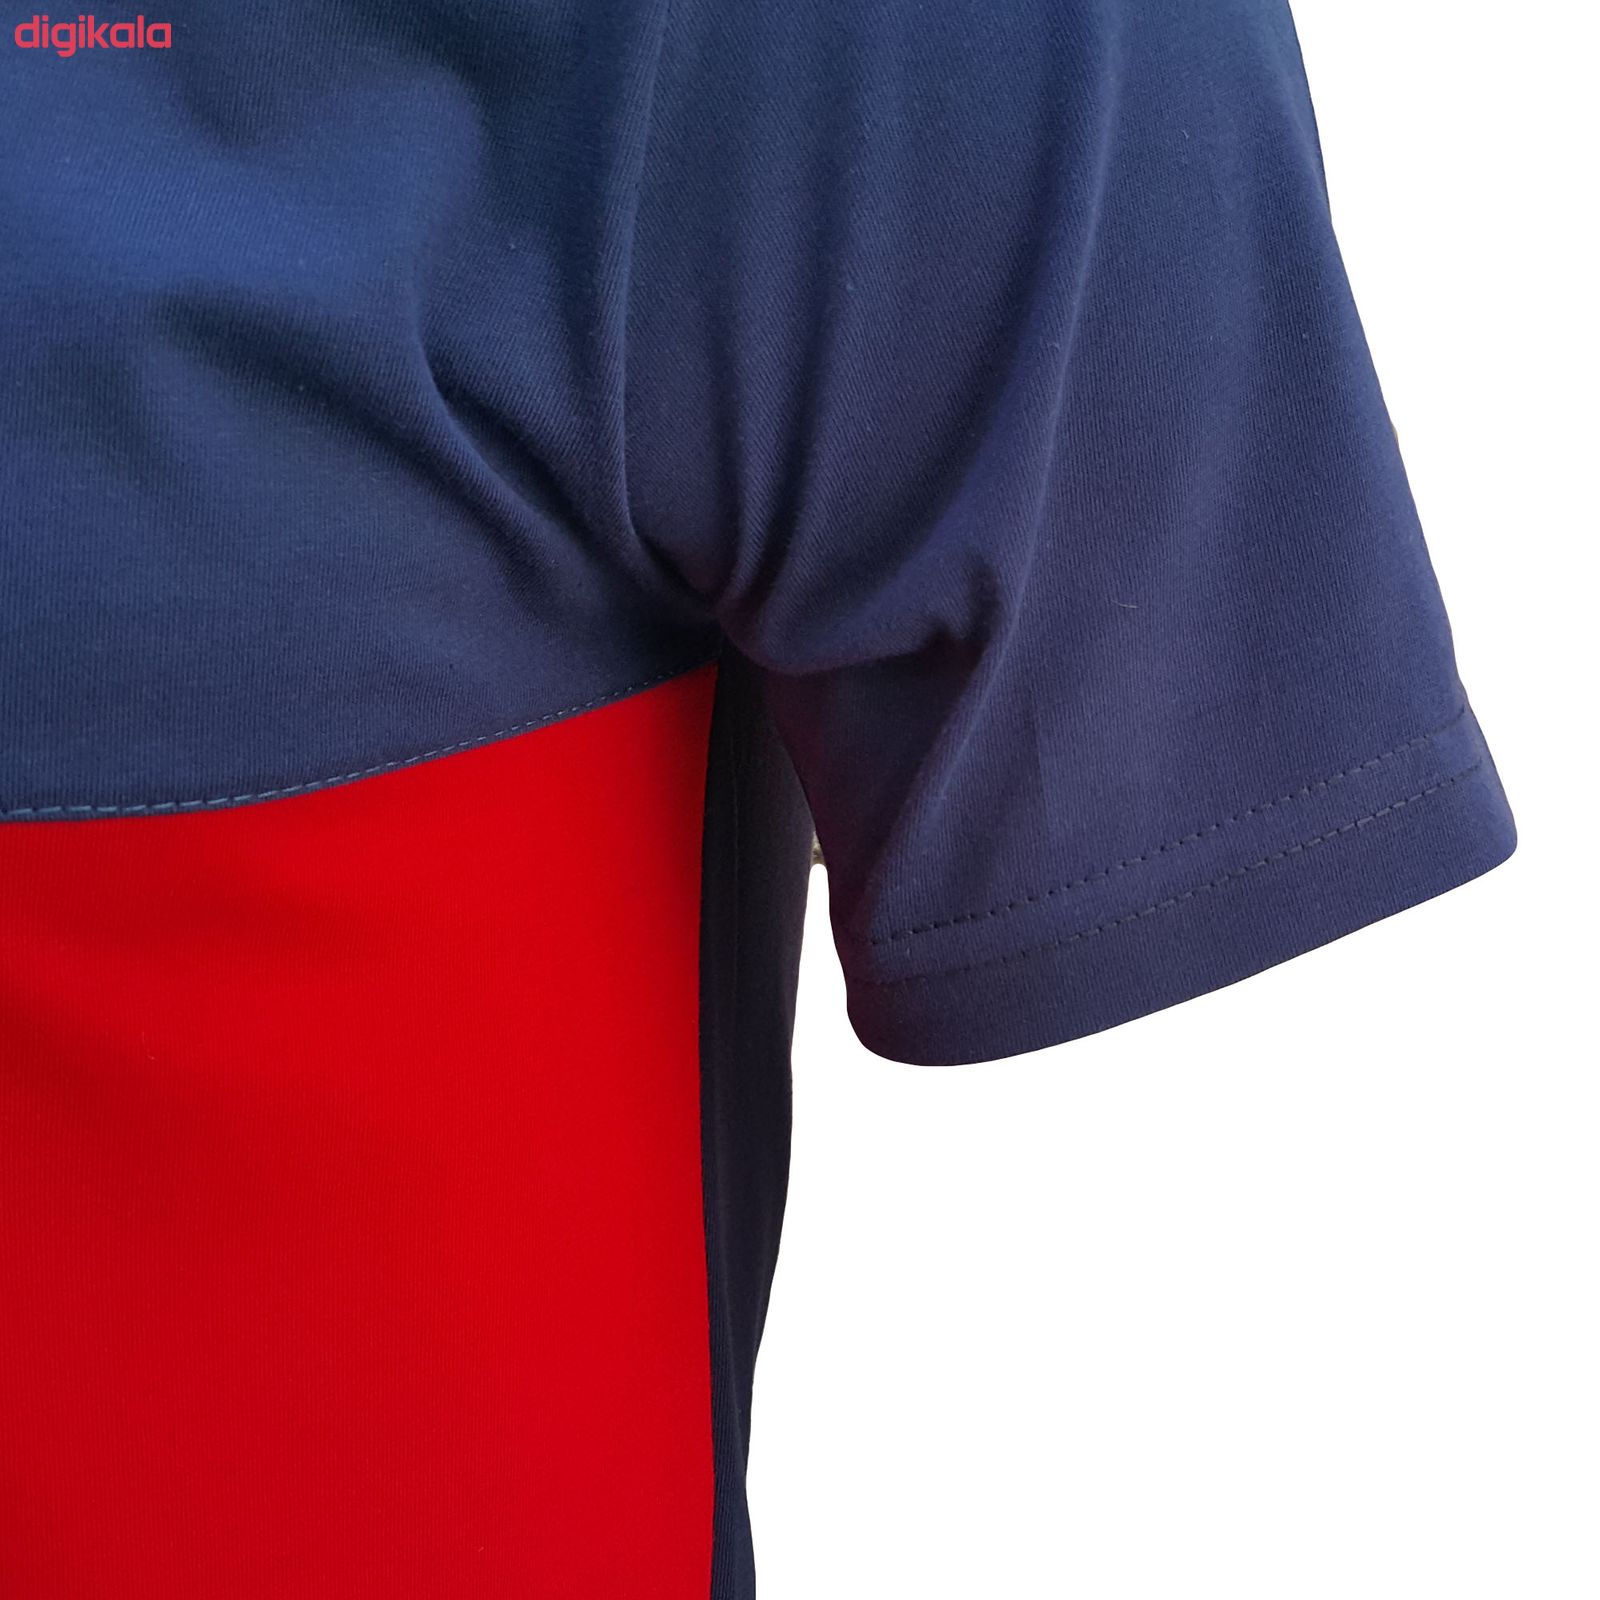  تی شرت آستین کوتاه مردانه طرح آژاکس کد A256G رنگ سرمه ای